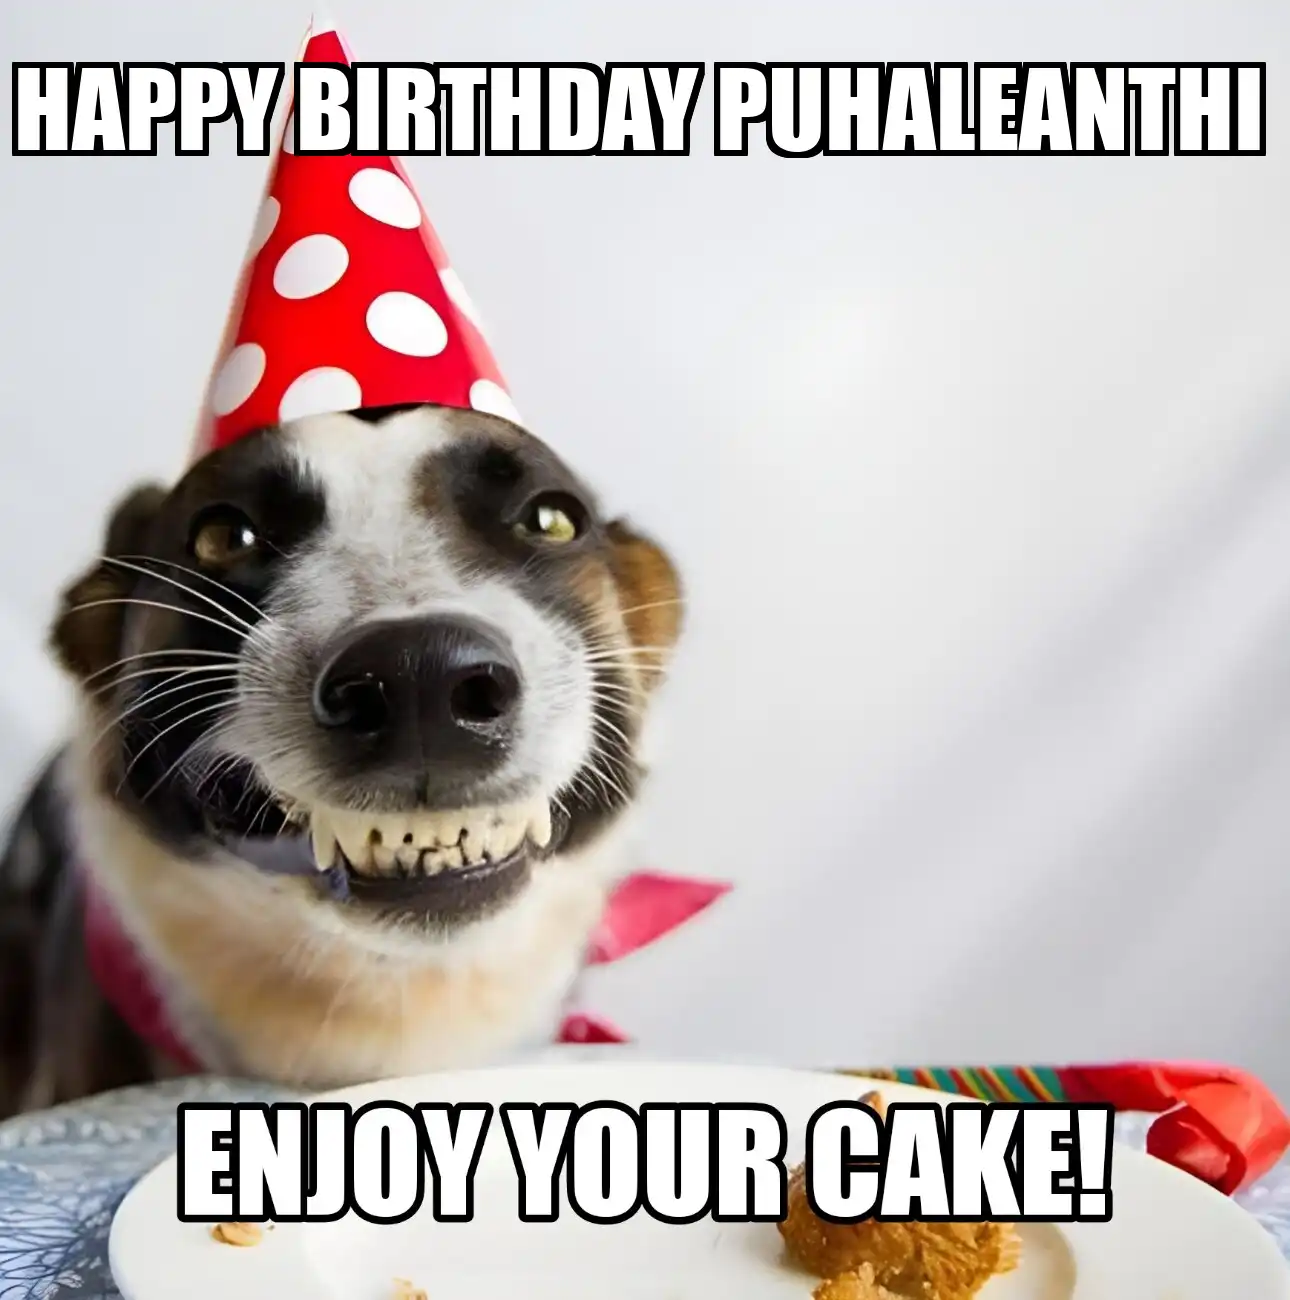 Happy Birthday Puhaleanthi Enjoy Your Cake Dog Meme